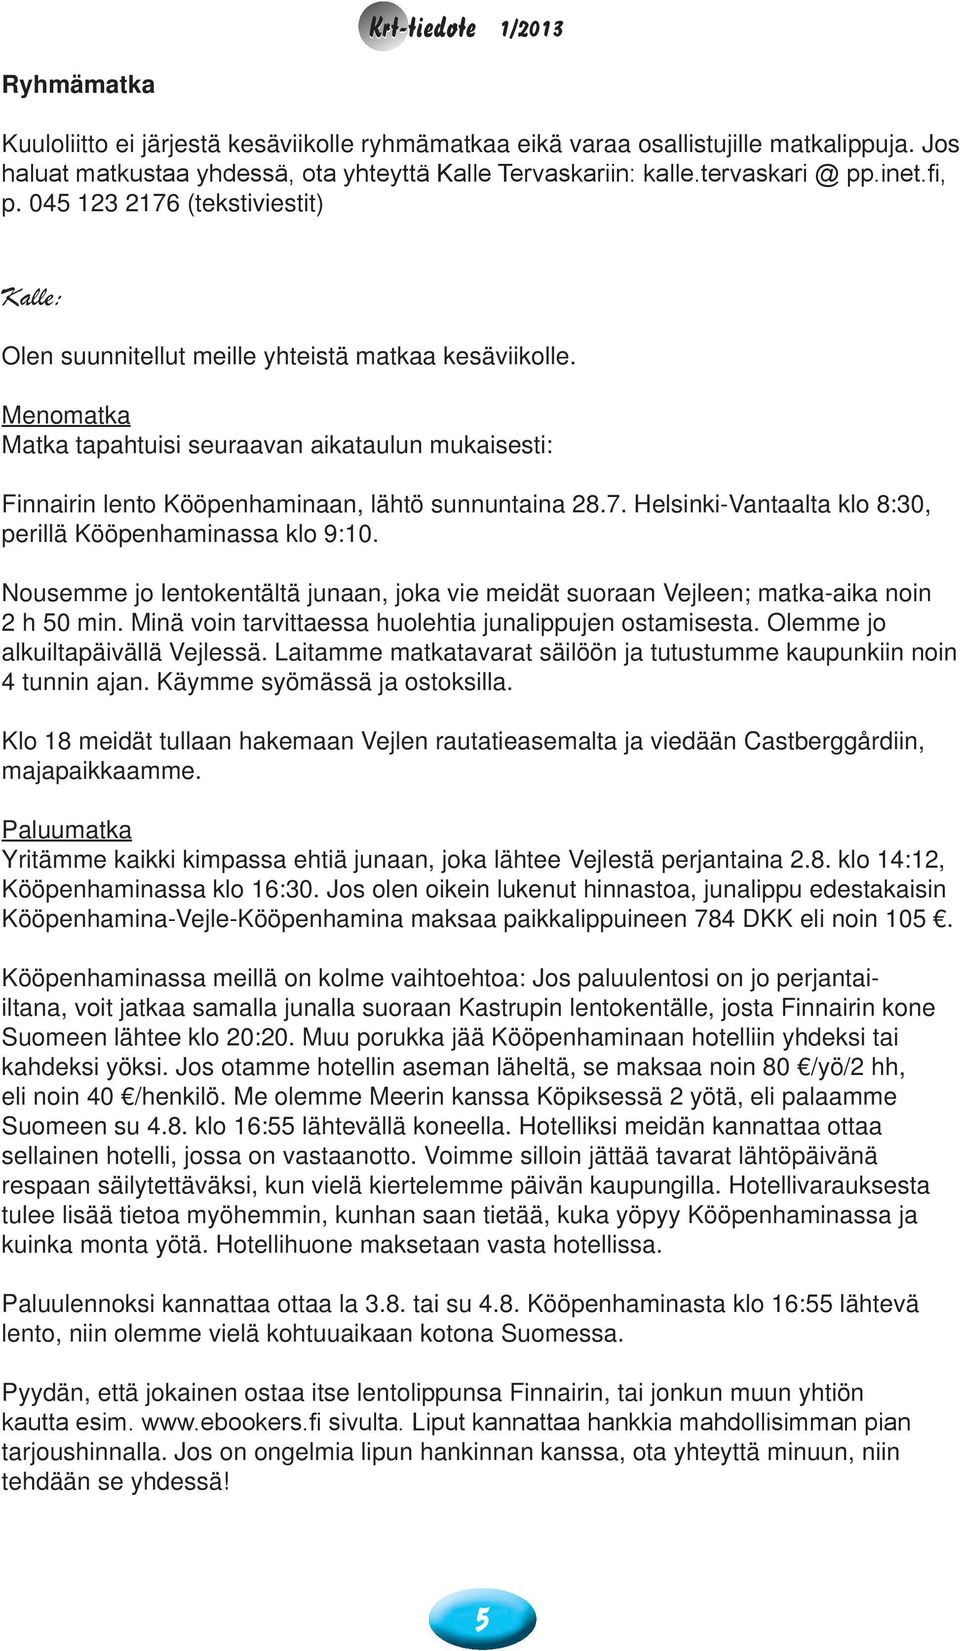 Menomatka Matka tapahtuisi seuraavan aikataulun mukaisesti: Finnairin lento Kööpenhaminaan, lähtö sunnuntaina 28.7. Helsinki-Vantaalta klo 8:30, perillä Kööpenhaminassa klo 9:10.